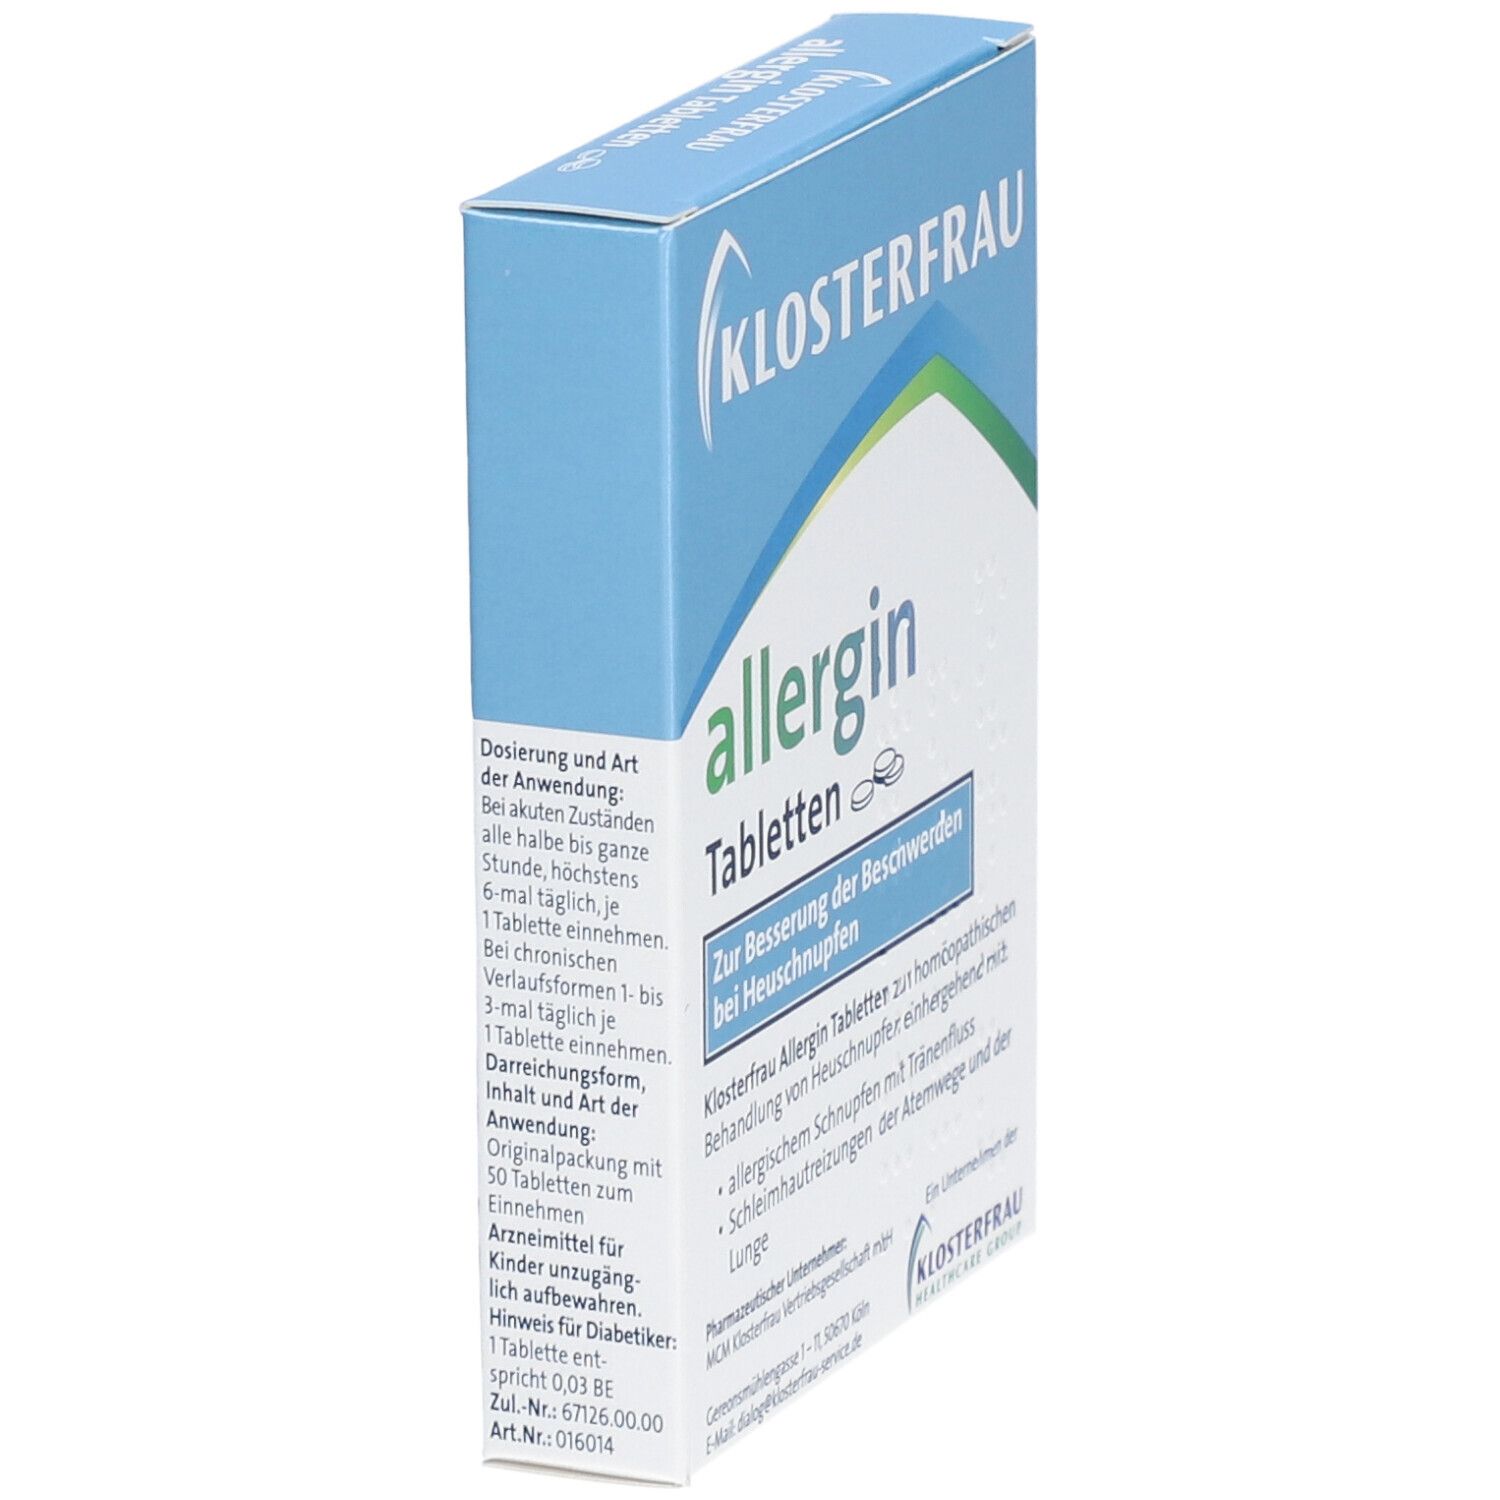 KLOSTERFRAU allergin Tabletten bei Heuschnupfen